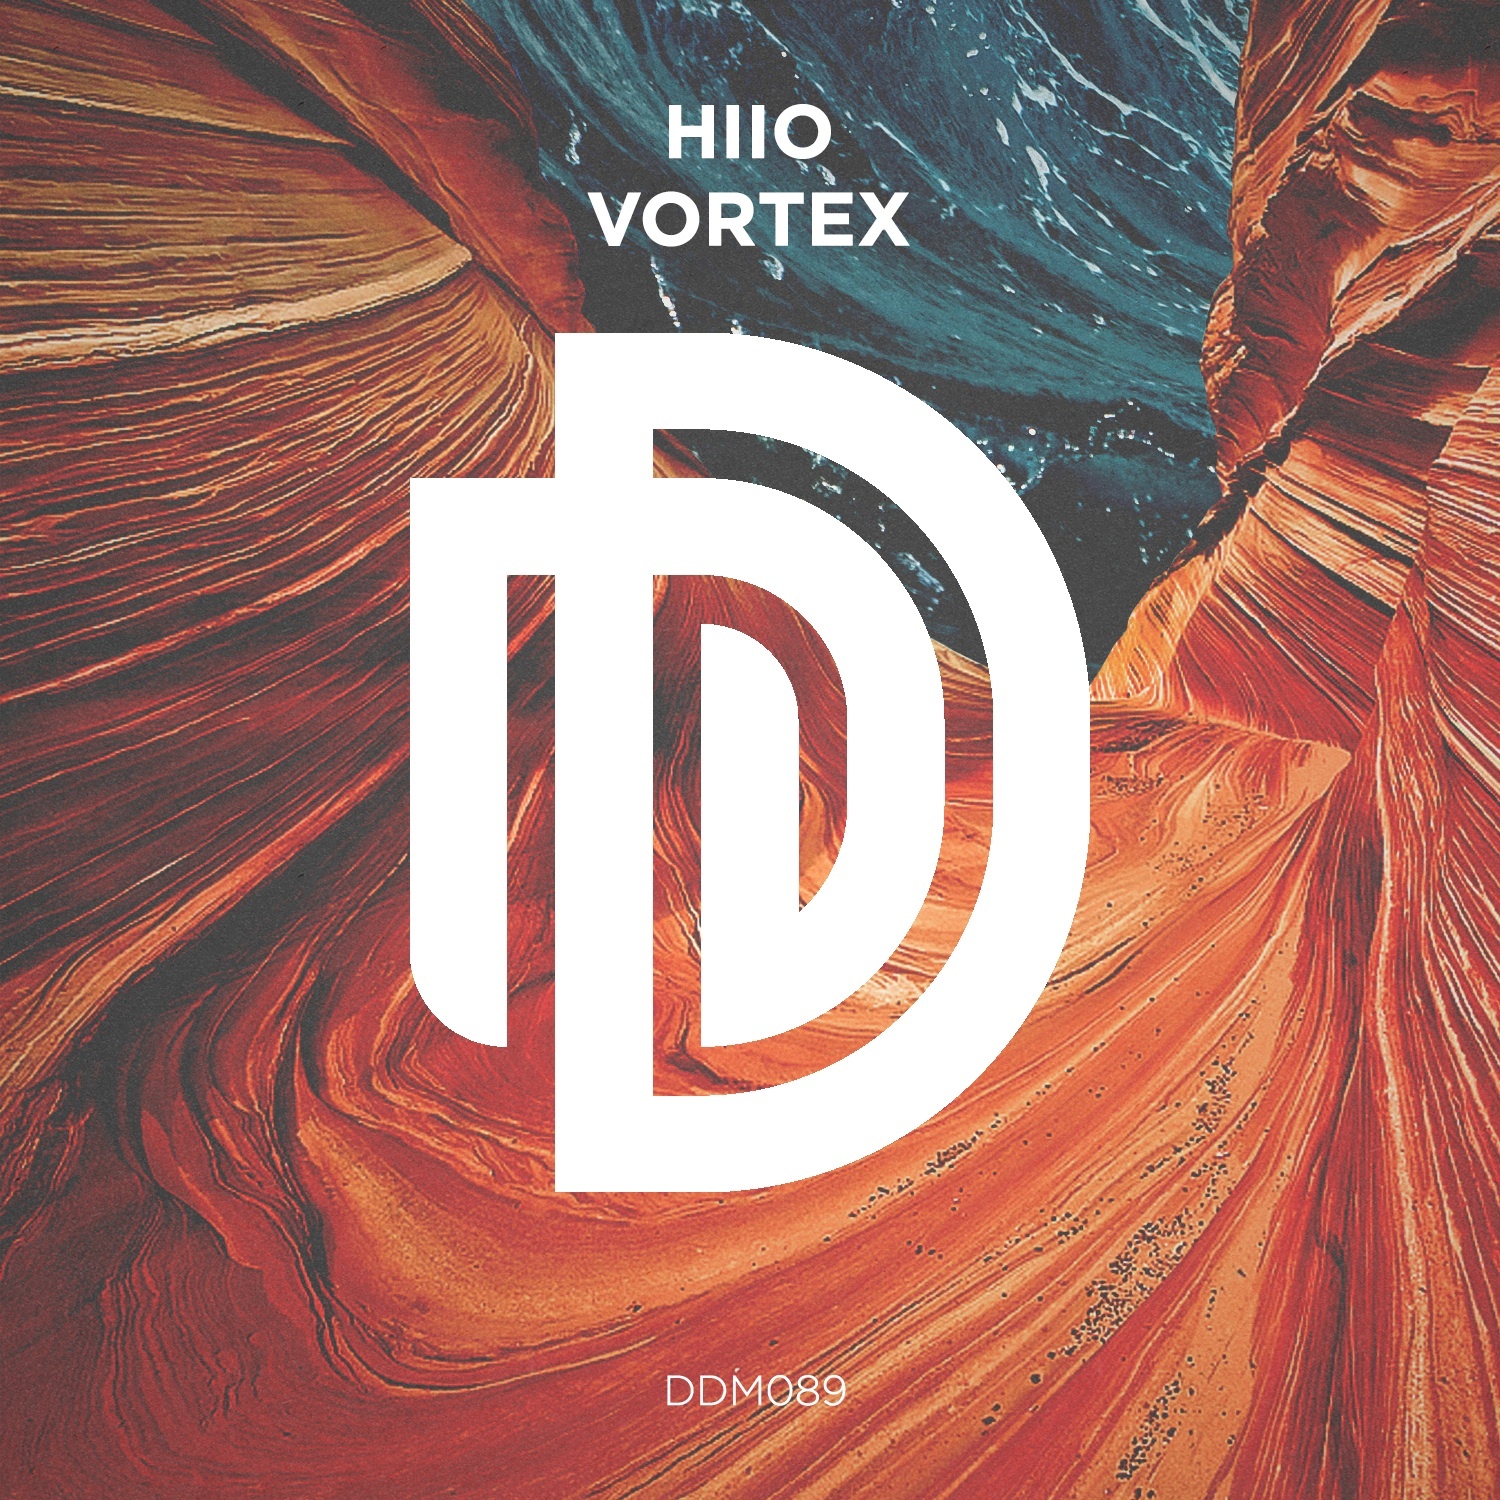 Vortex (Original Mix)